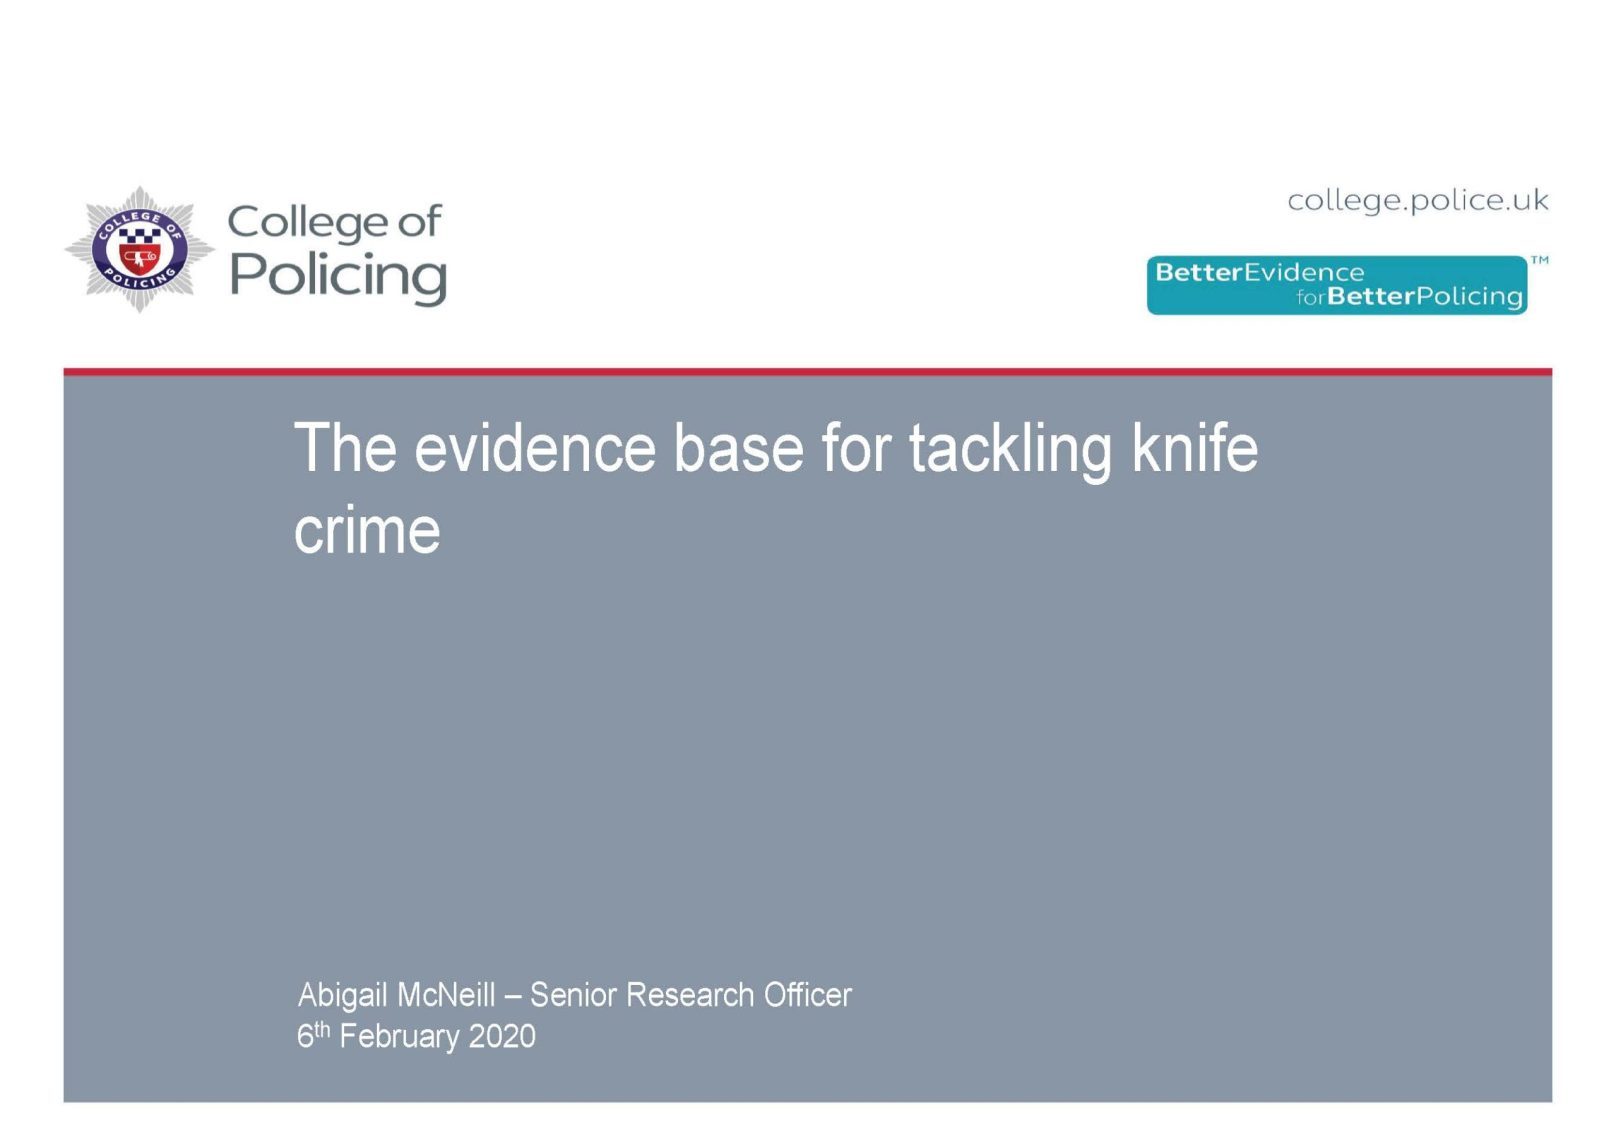 Evidence base for tackling knife crime